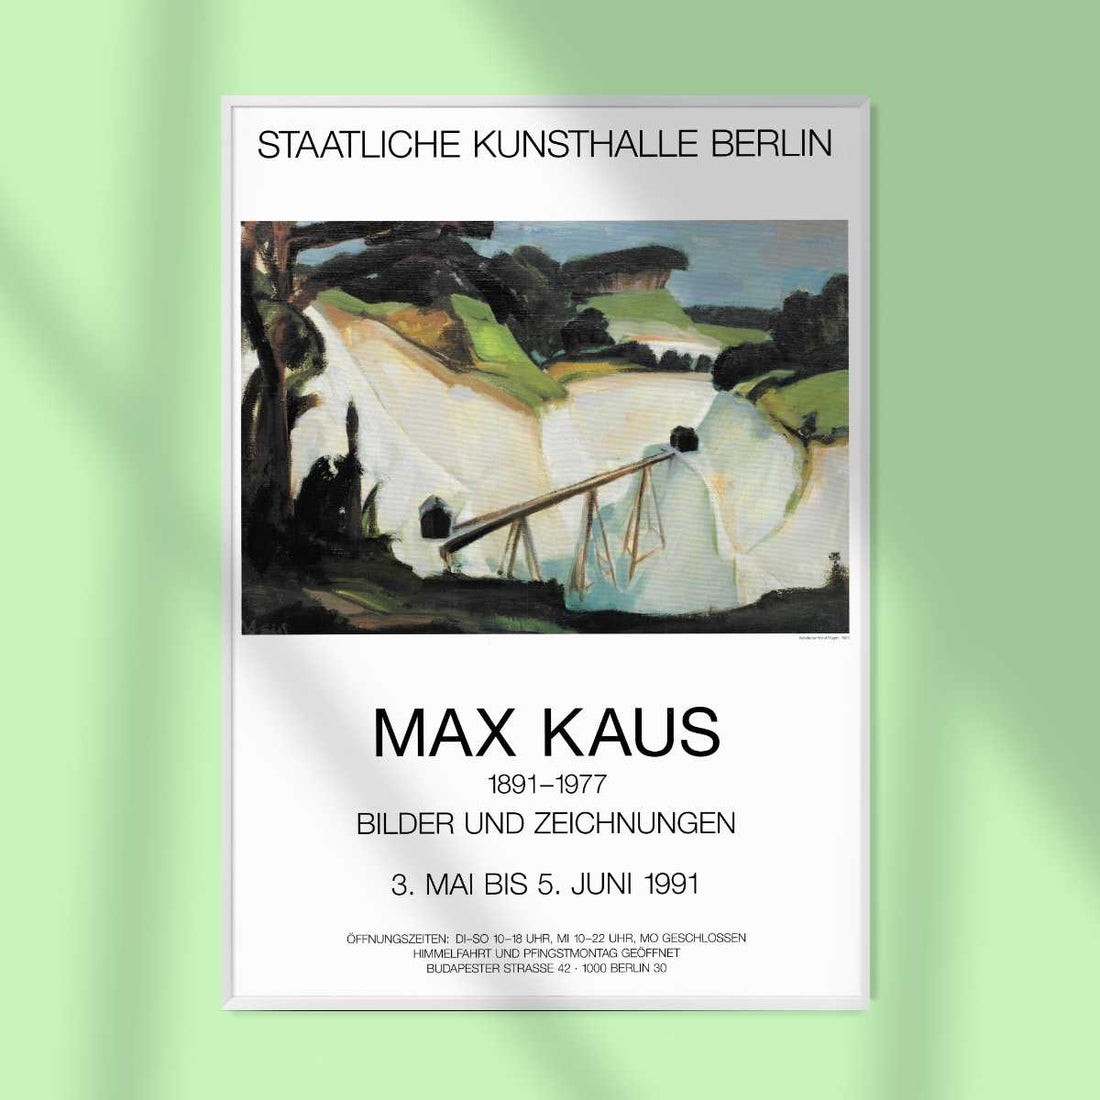 Kaus, Max - Bilder und Zeichnungen, 1991